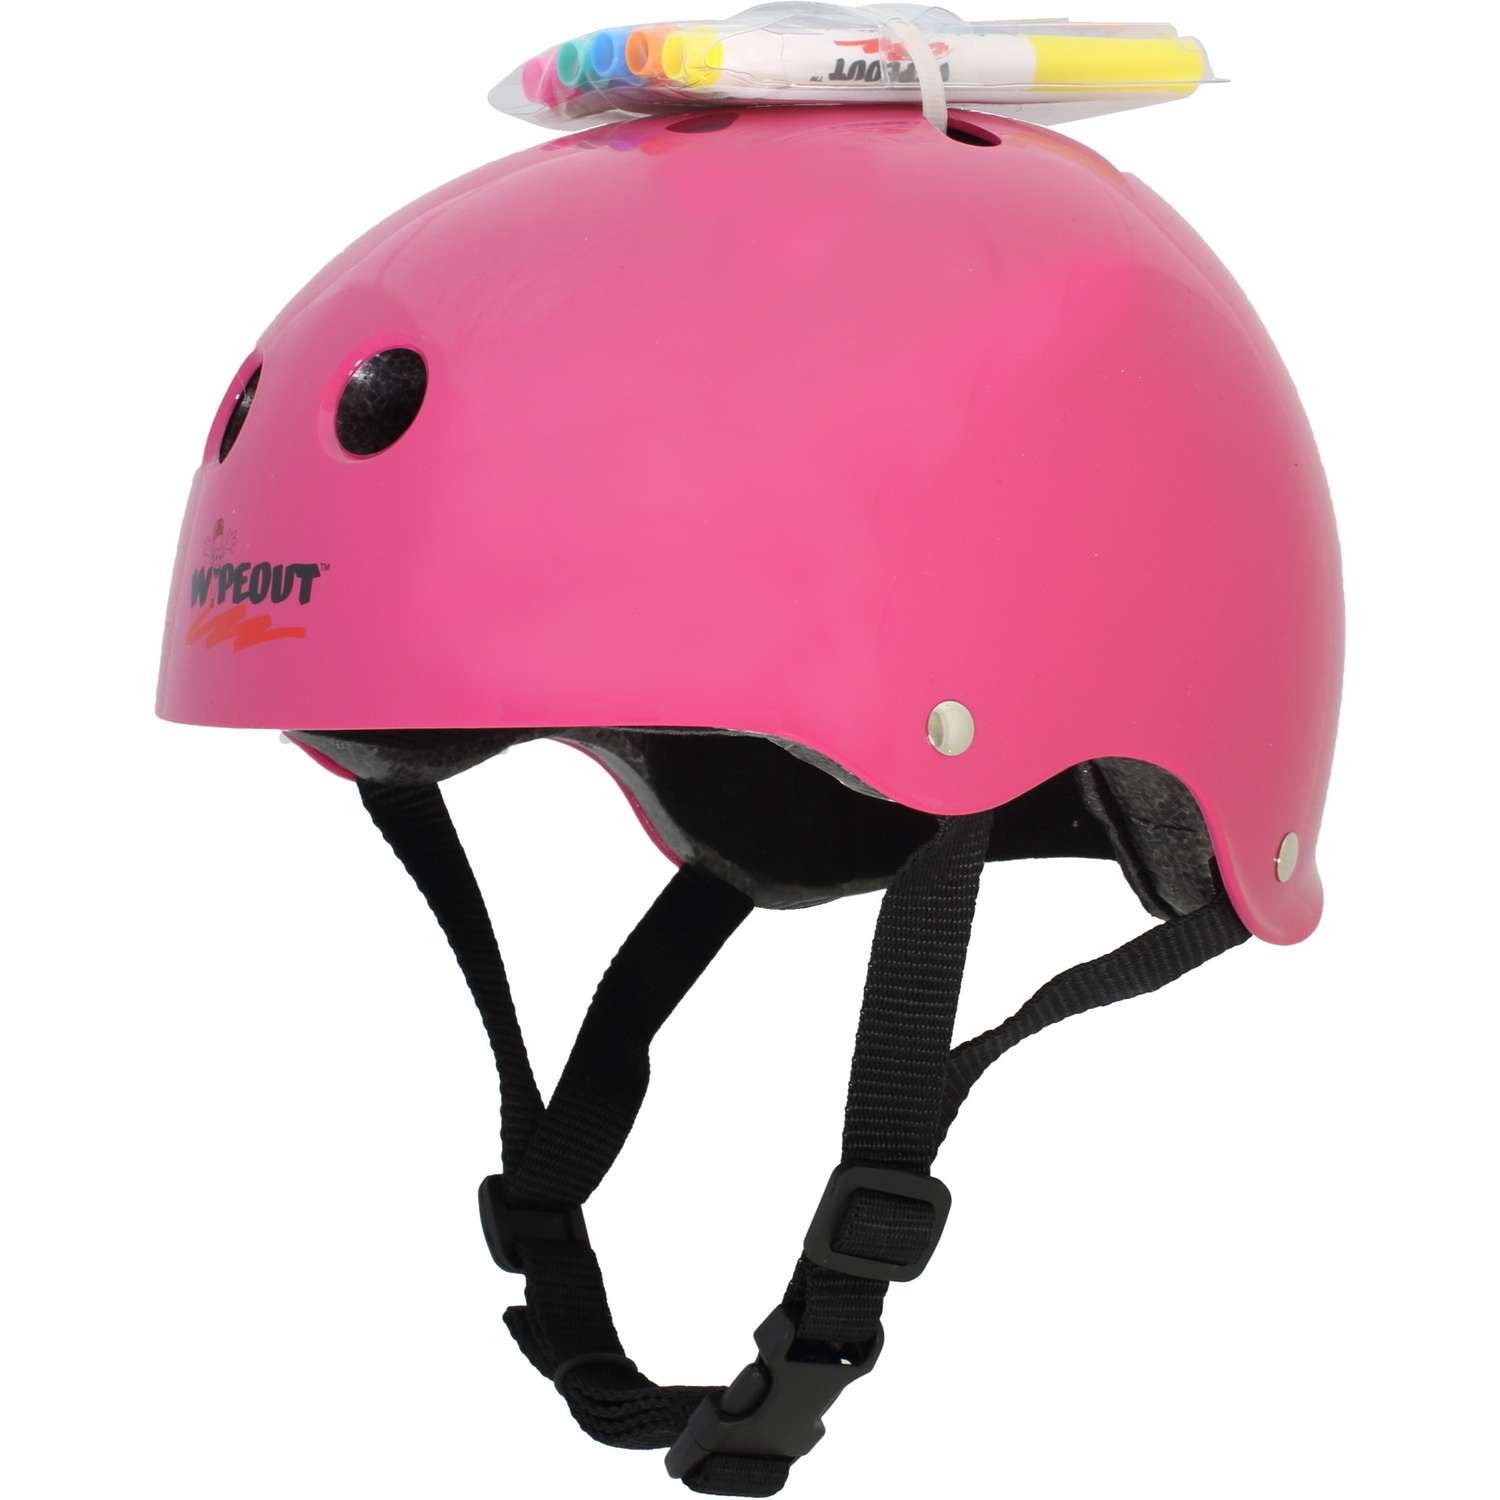 Шлем защитный спортивный WIPEOUT Neon Pink с фломастерами и трафаретами / размер L 8+ / обхват головы 52-56 см. - фото 2